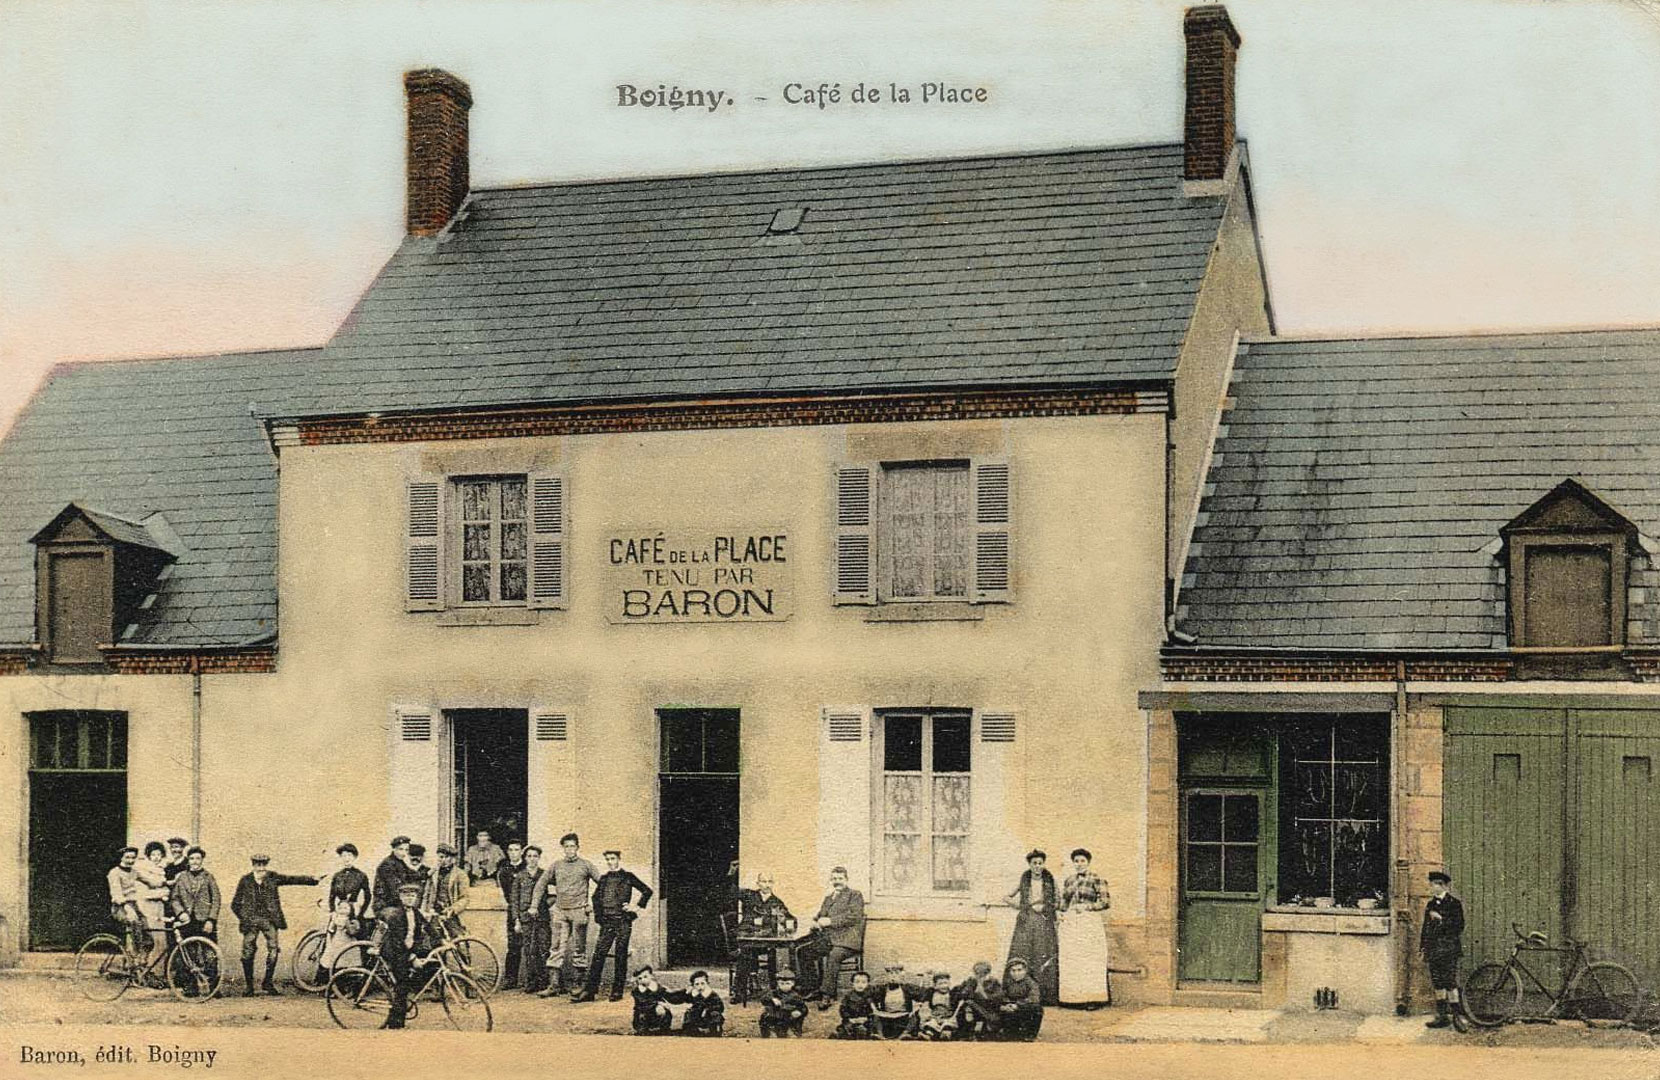 La petite histoire de Boigny-sur-Bionne, café de la Place